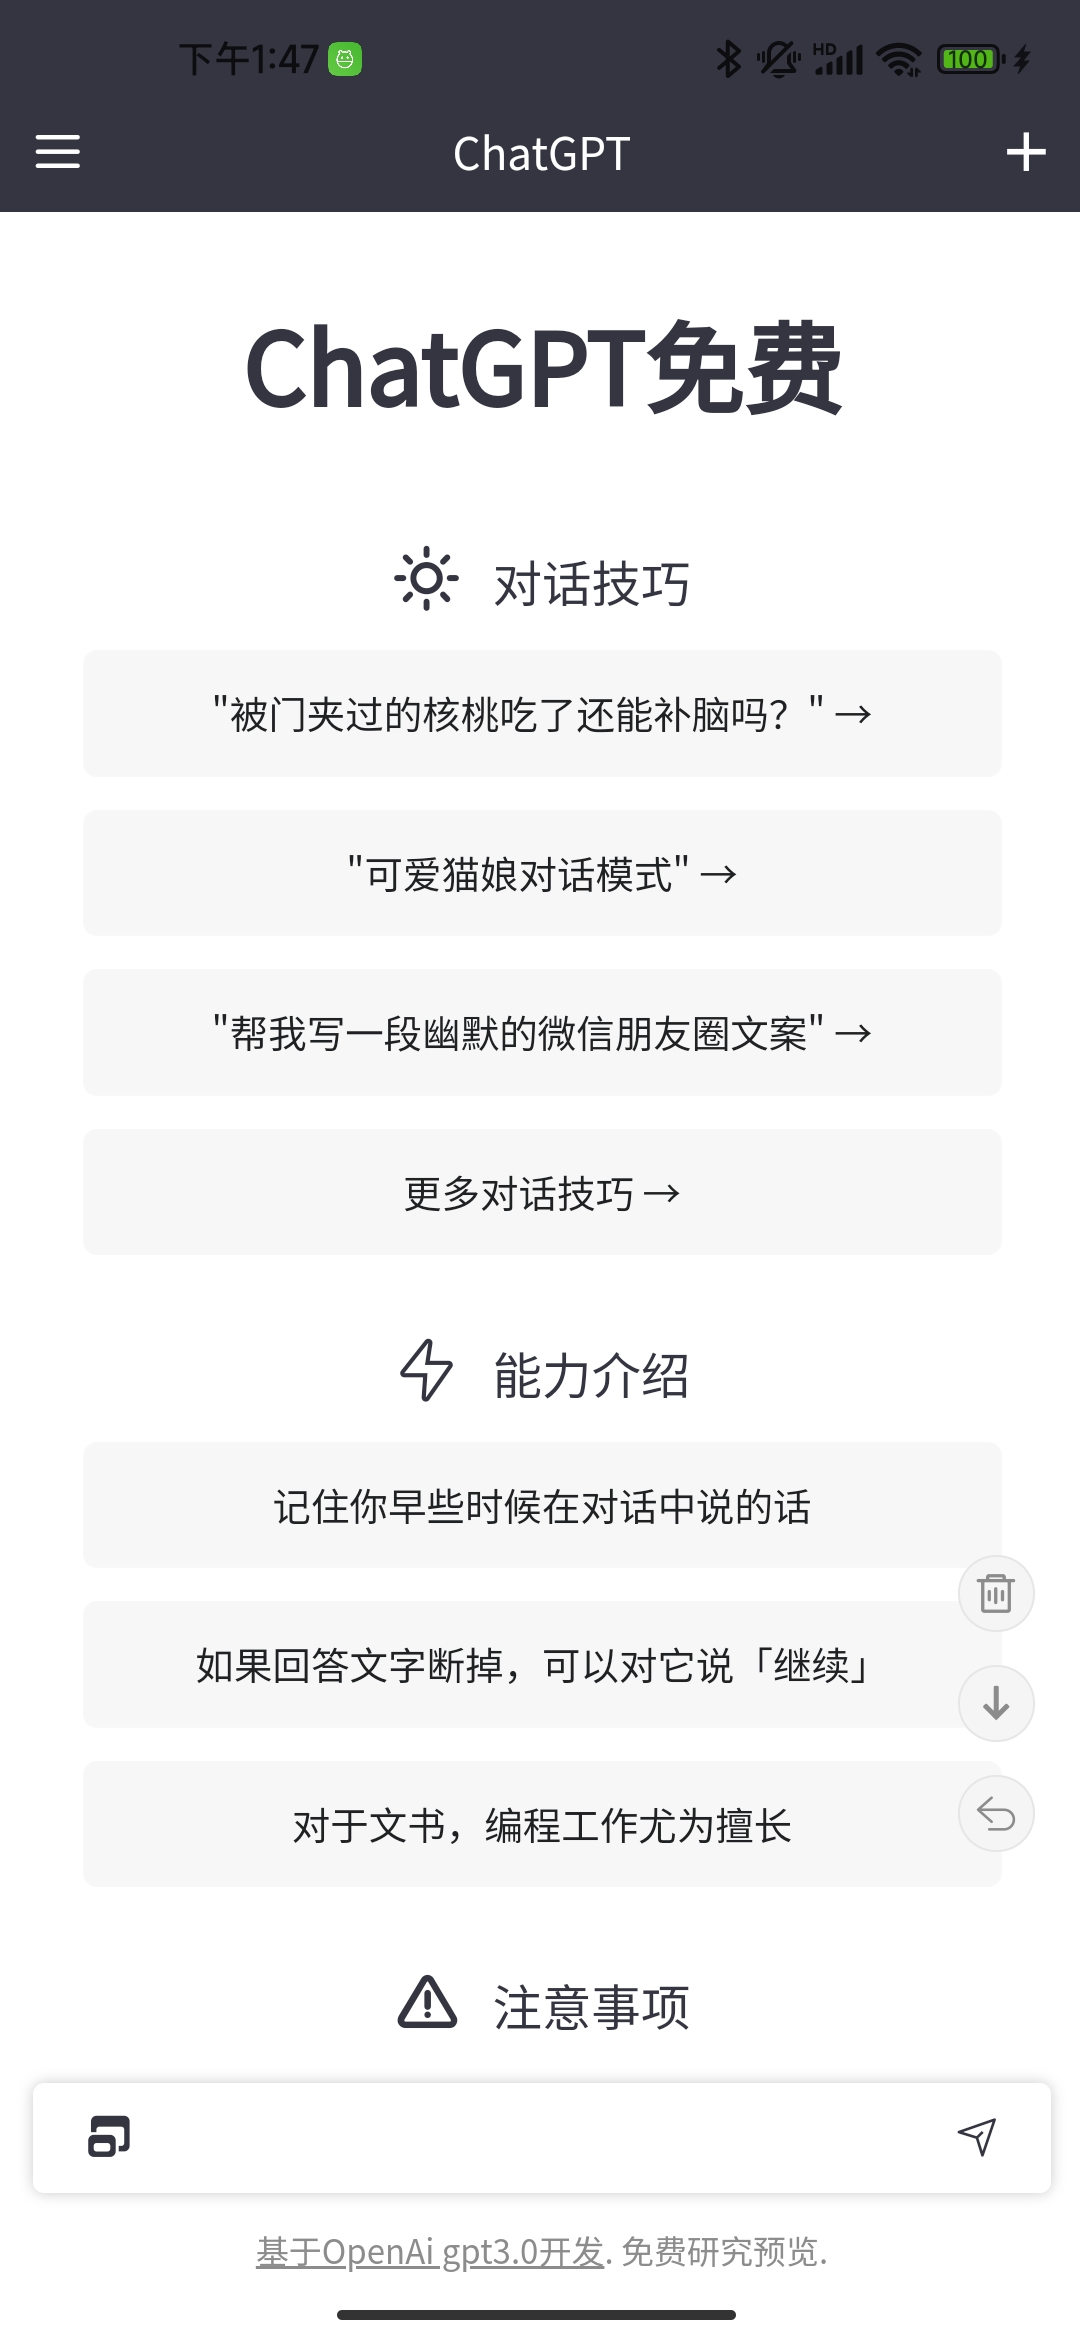 ChatGPT大师V1.0 GPT免注册中文复刻版-危笑云资源网